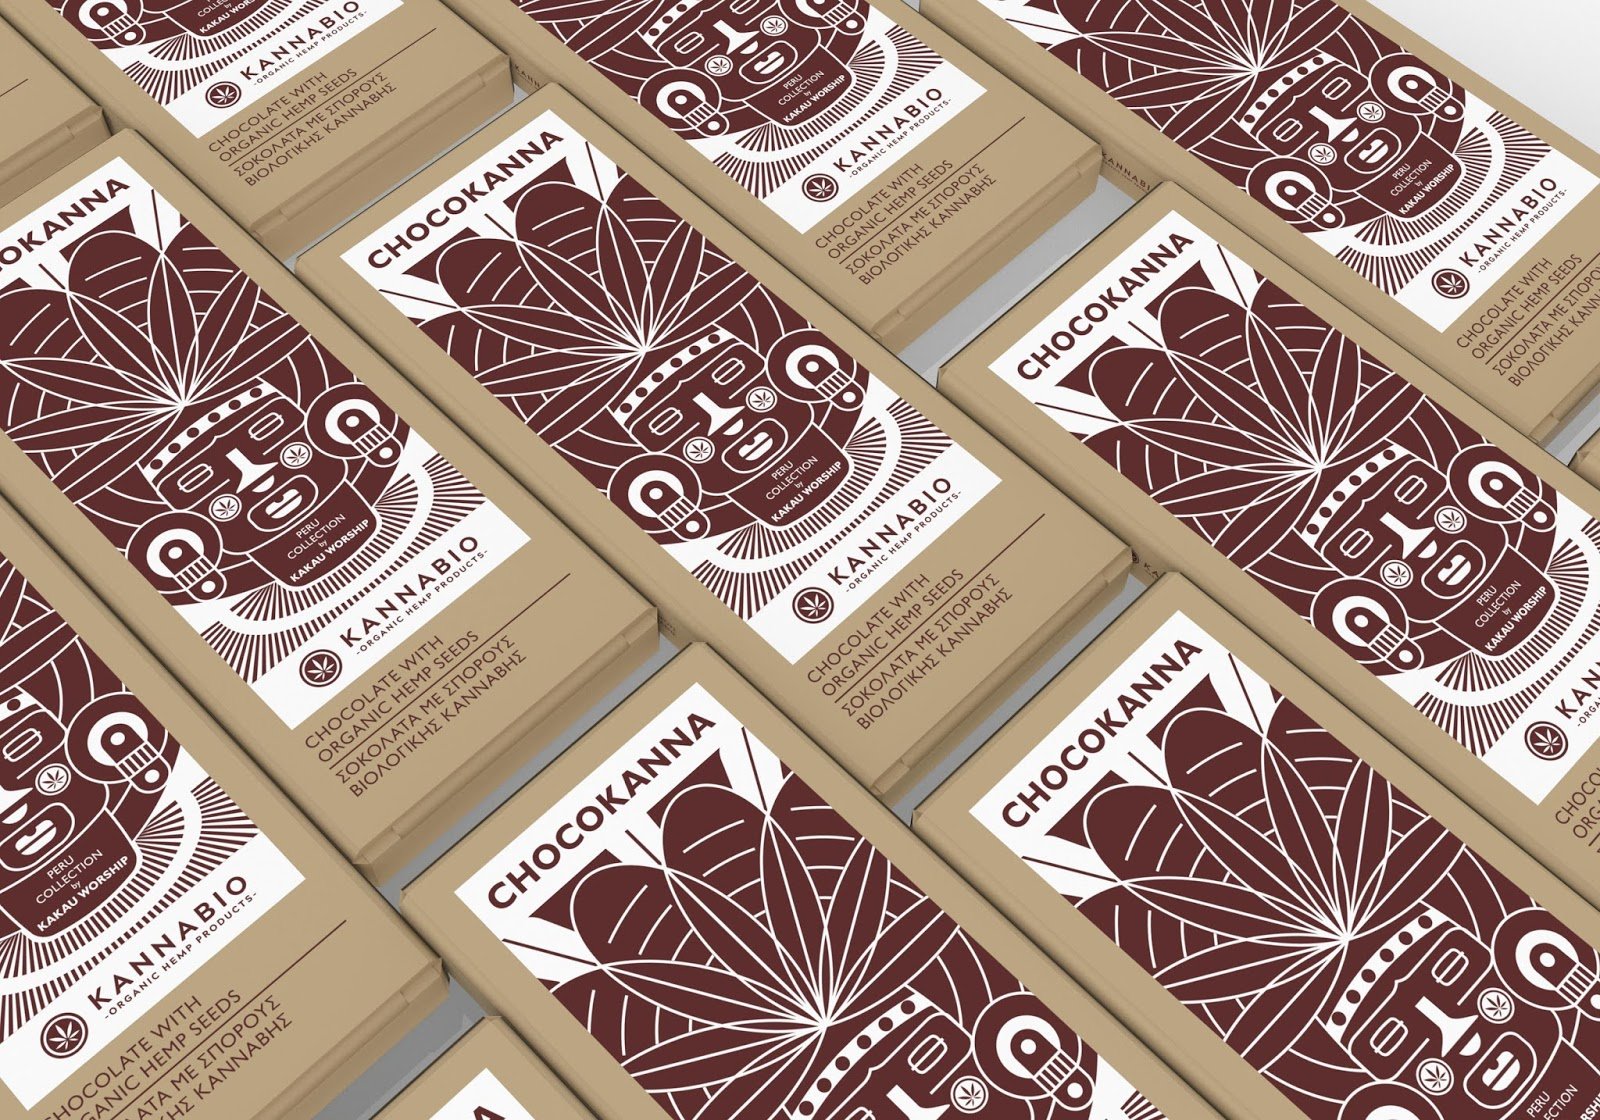 Пачки шоколада. Шоколад в упаковке. Дизайн упаковки шоколада. Упаковка для шоколада ручной работы. Шоколадная упаковка дизайн.